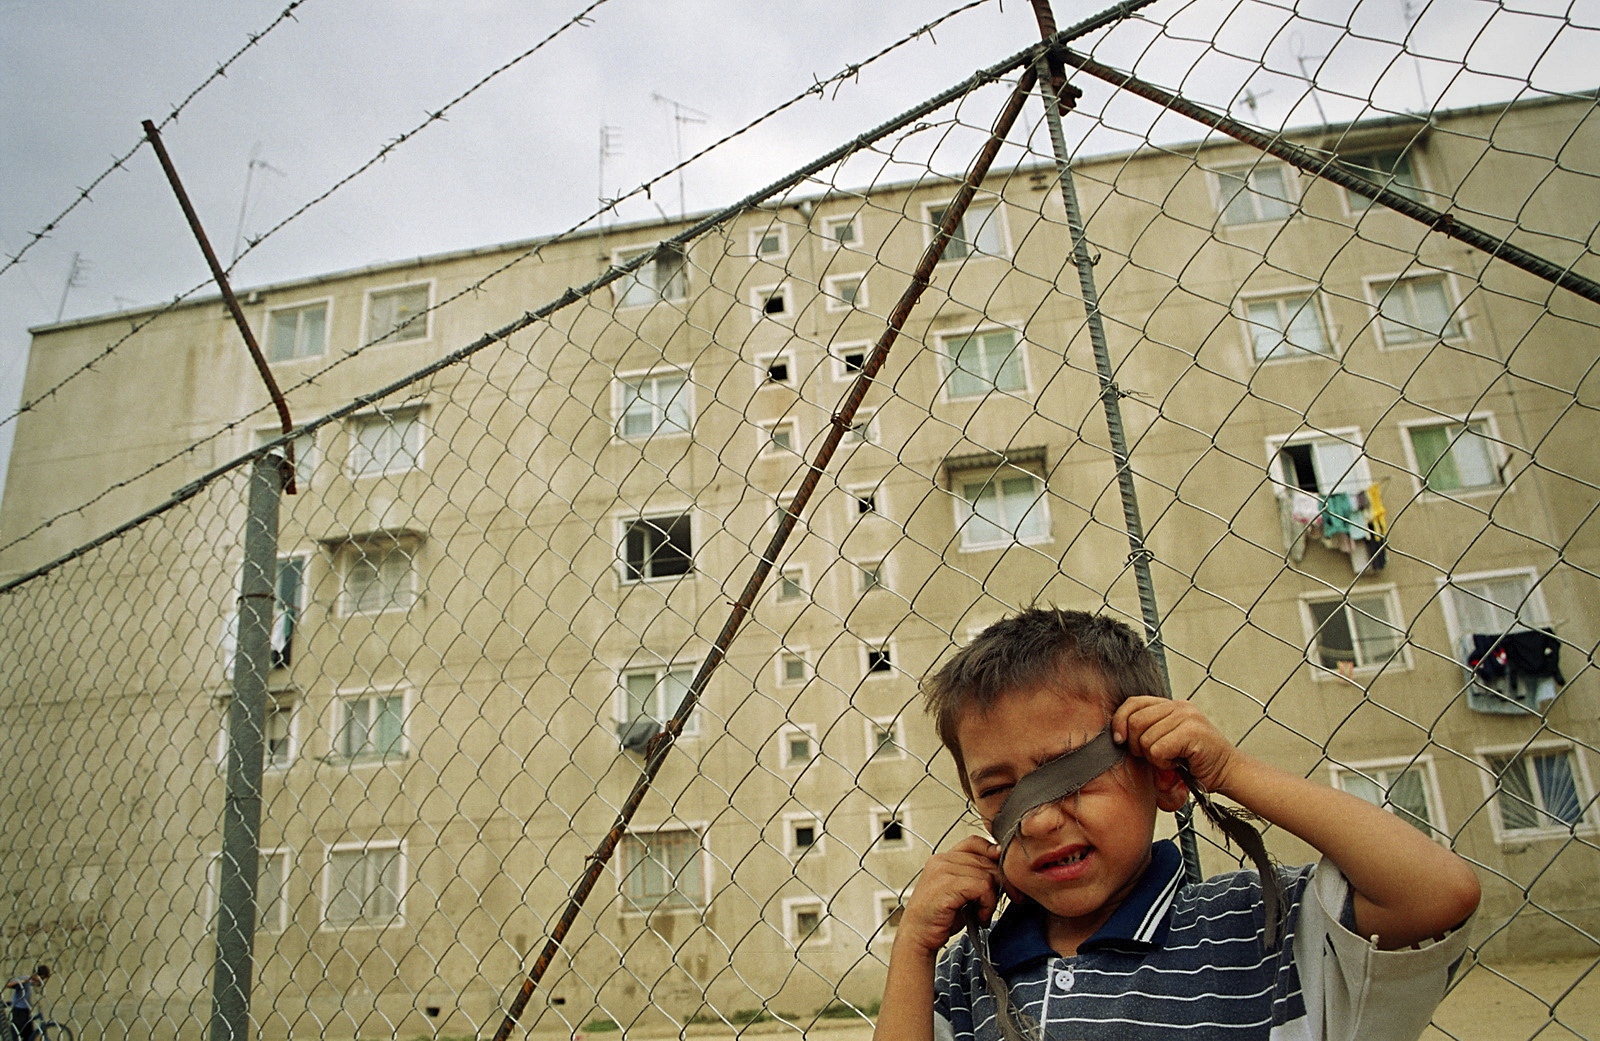 Child outside block in Ferentari, Bucharest (copyright: Petrut Calinescu)